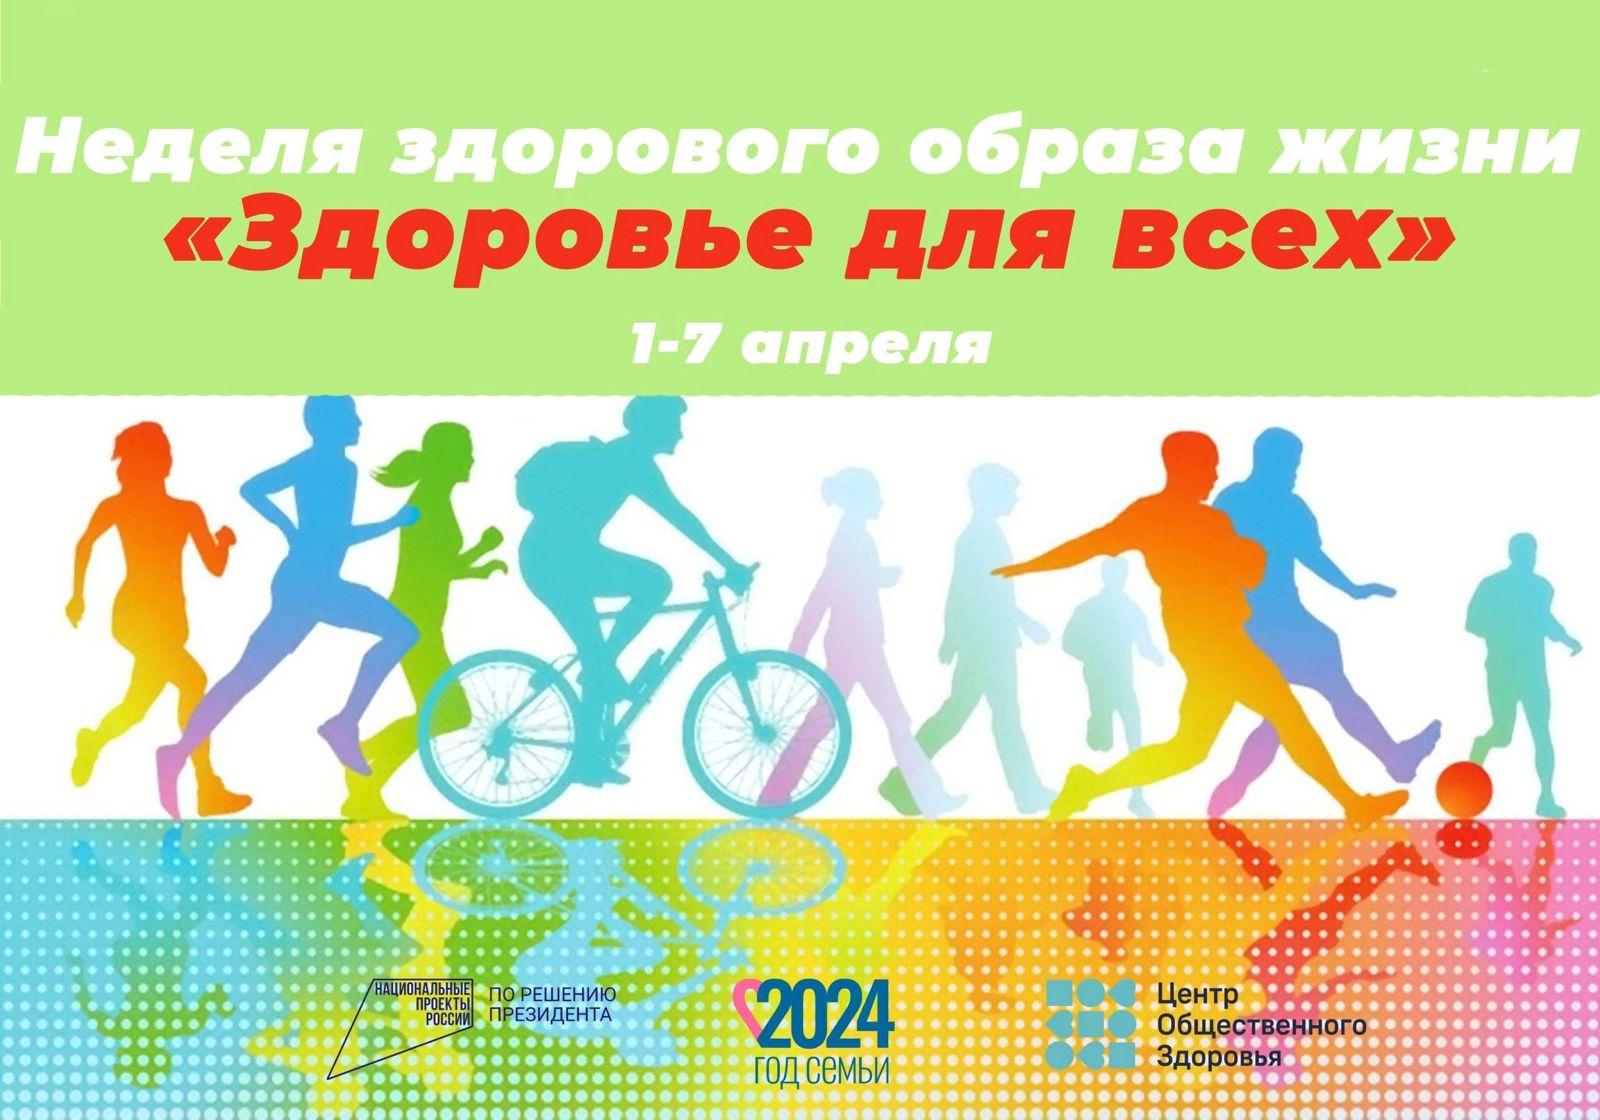 Неделя здорового образа жизни «Здоровье для всех» стартует в Ульяновской области.